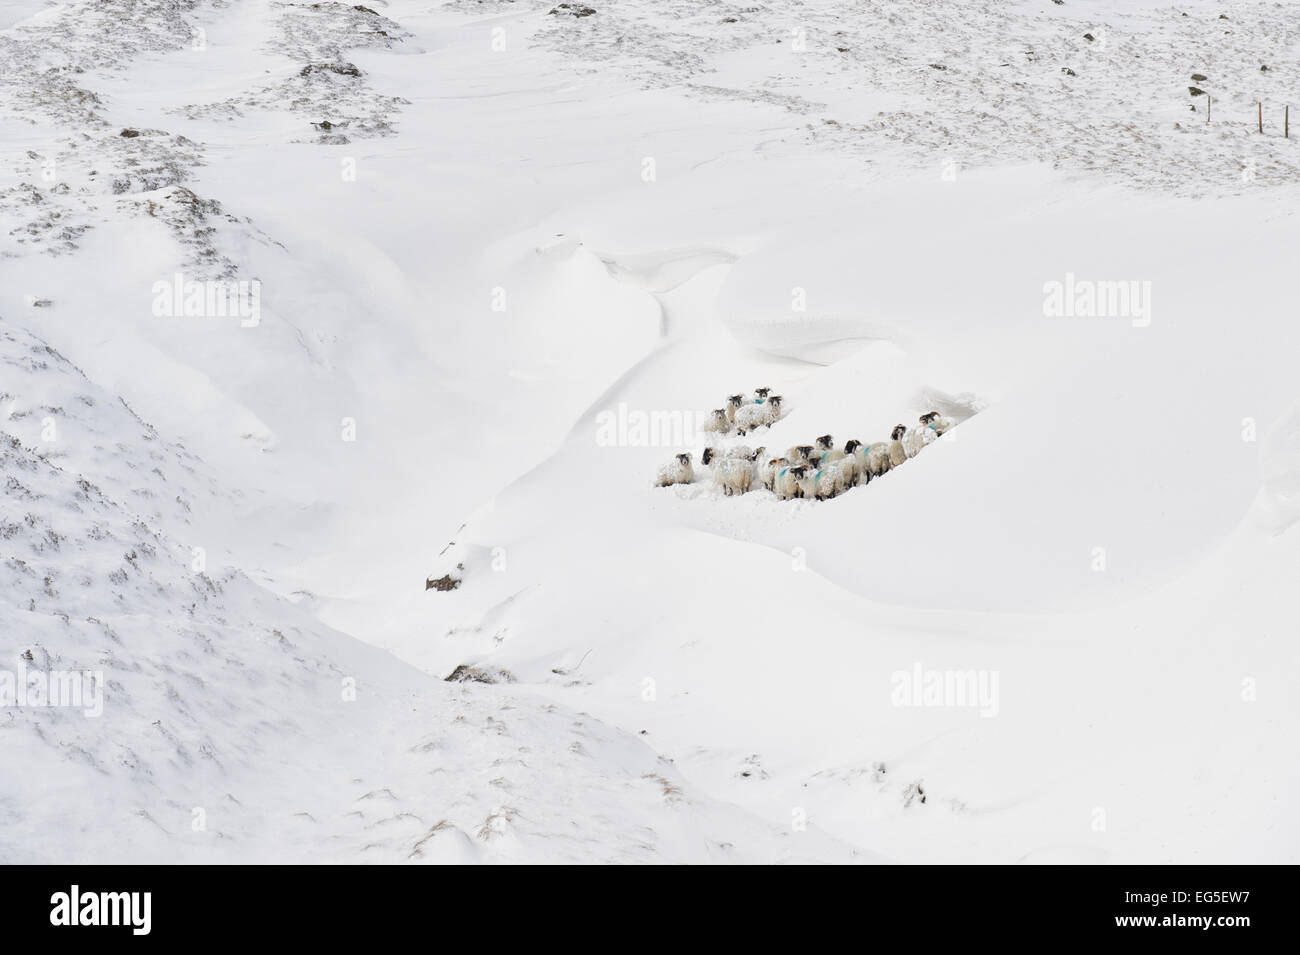 Schafe in einer Schneeverwehung. Braemar Pass, Cairngorm National Park. Schottischen Highlands. Schottland Stockfoto